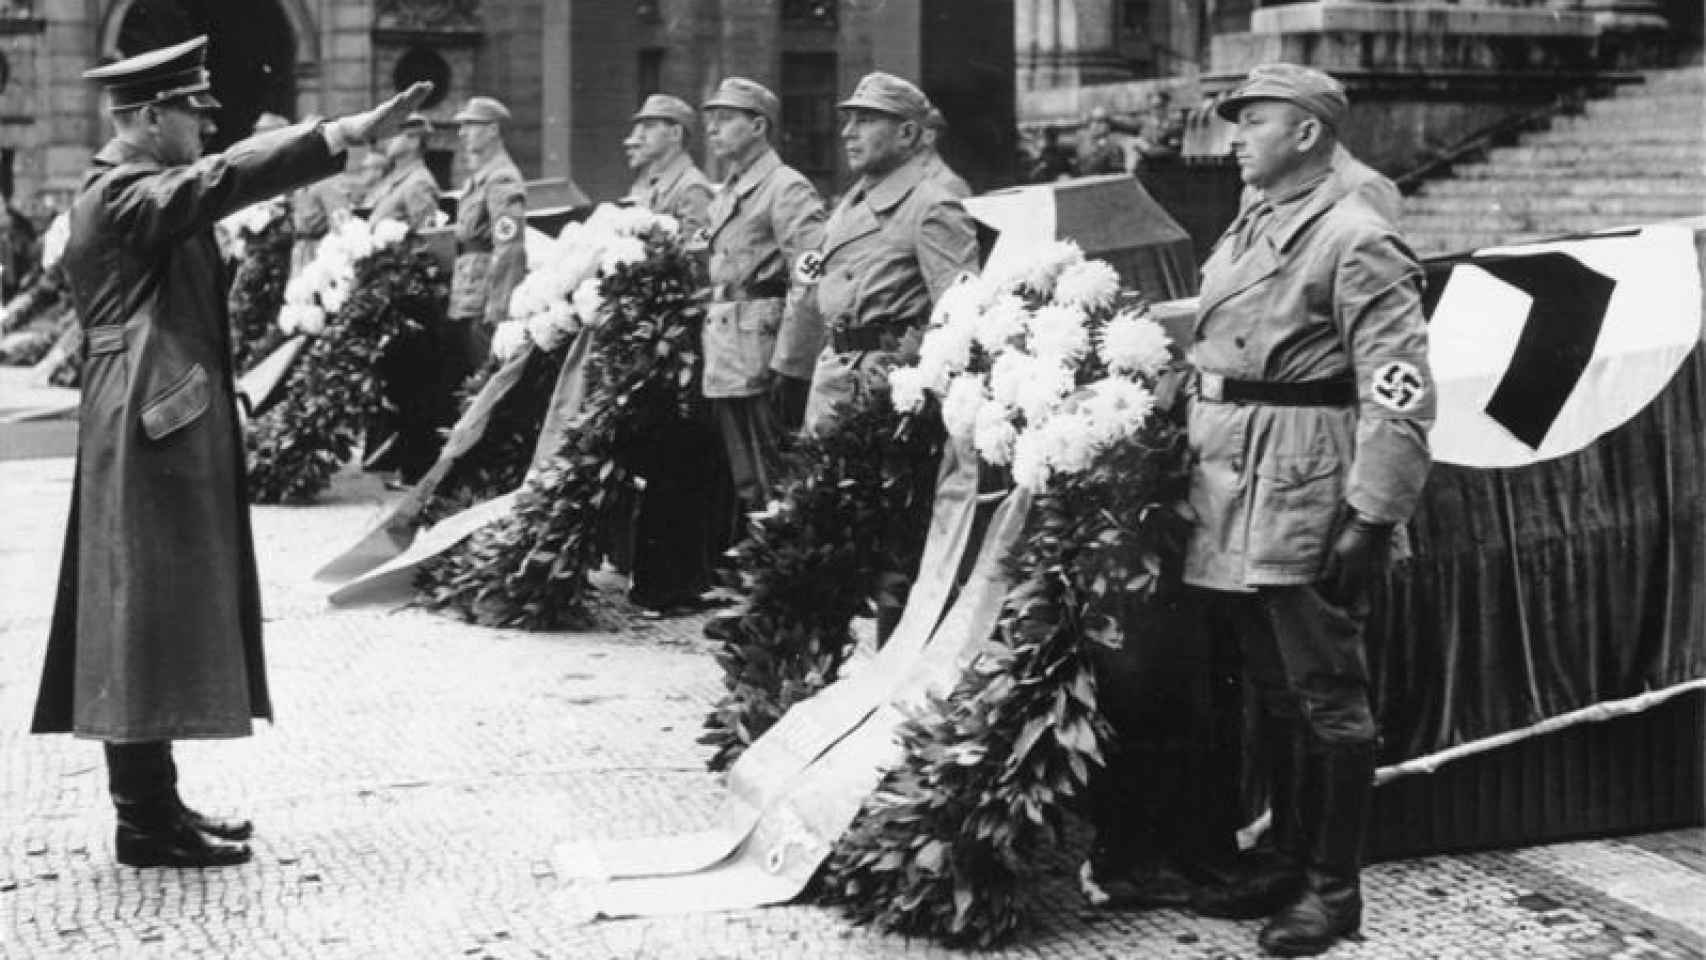 Homenaje de Hitler a los nazis fallecidos durante el putsch de 1923.